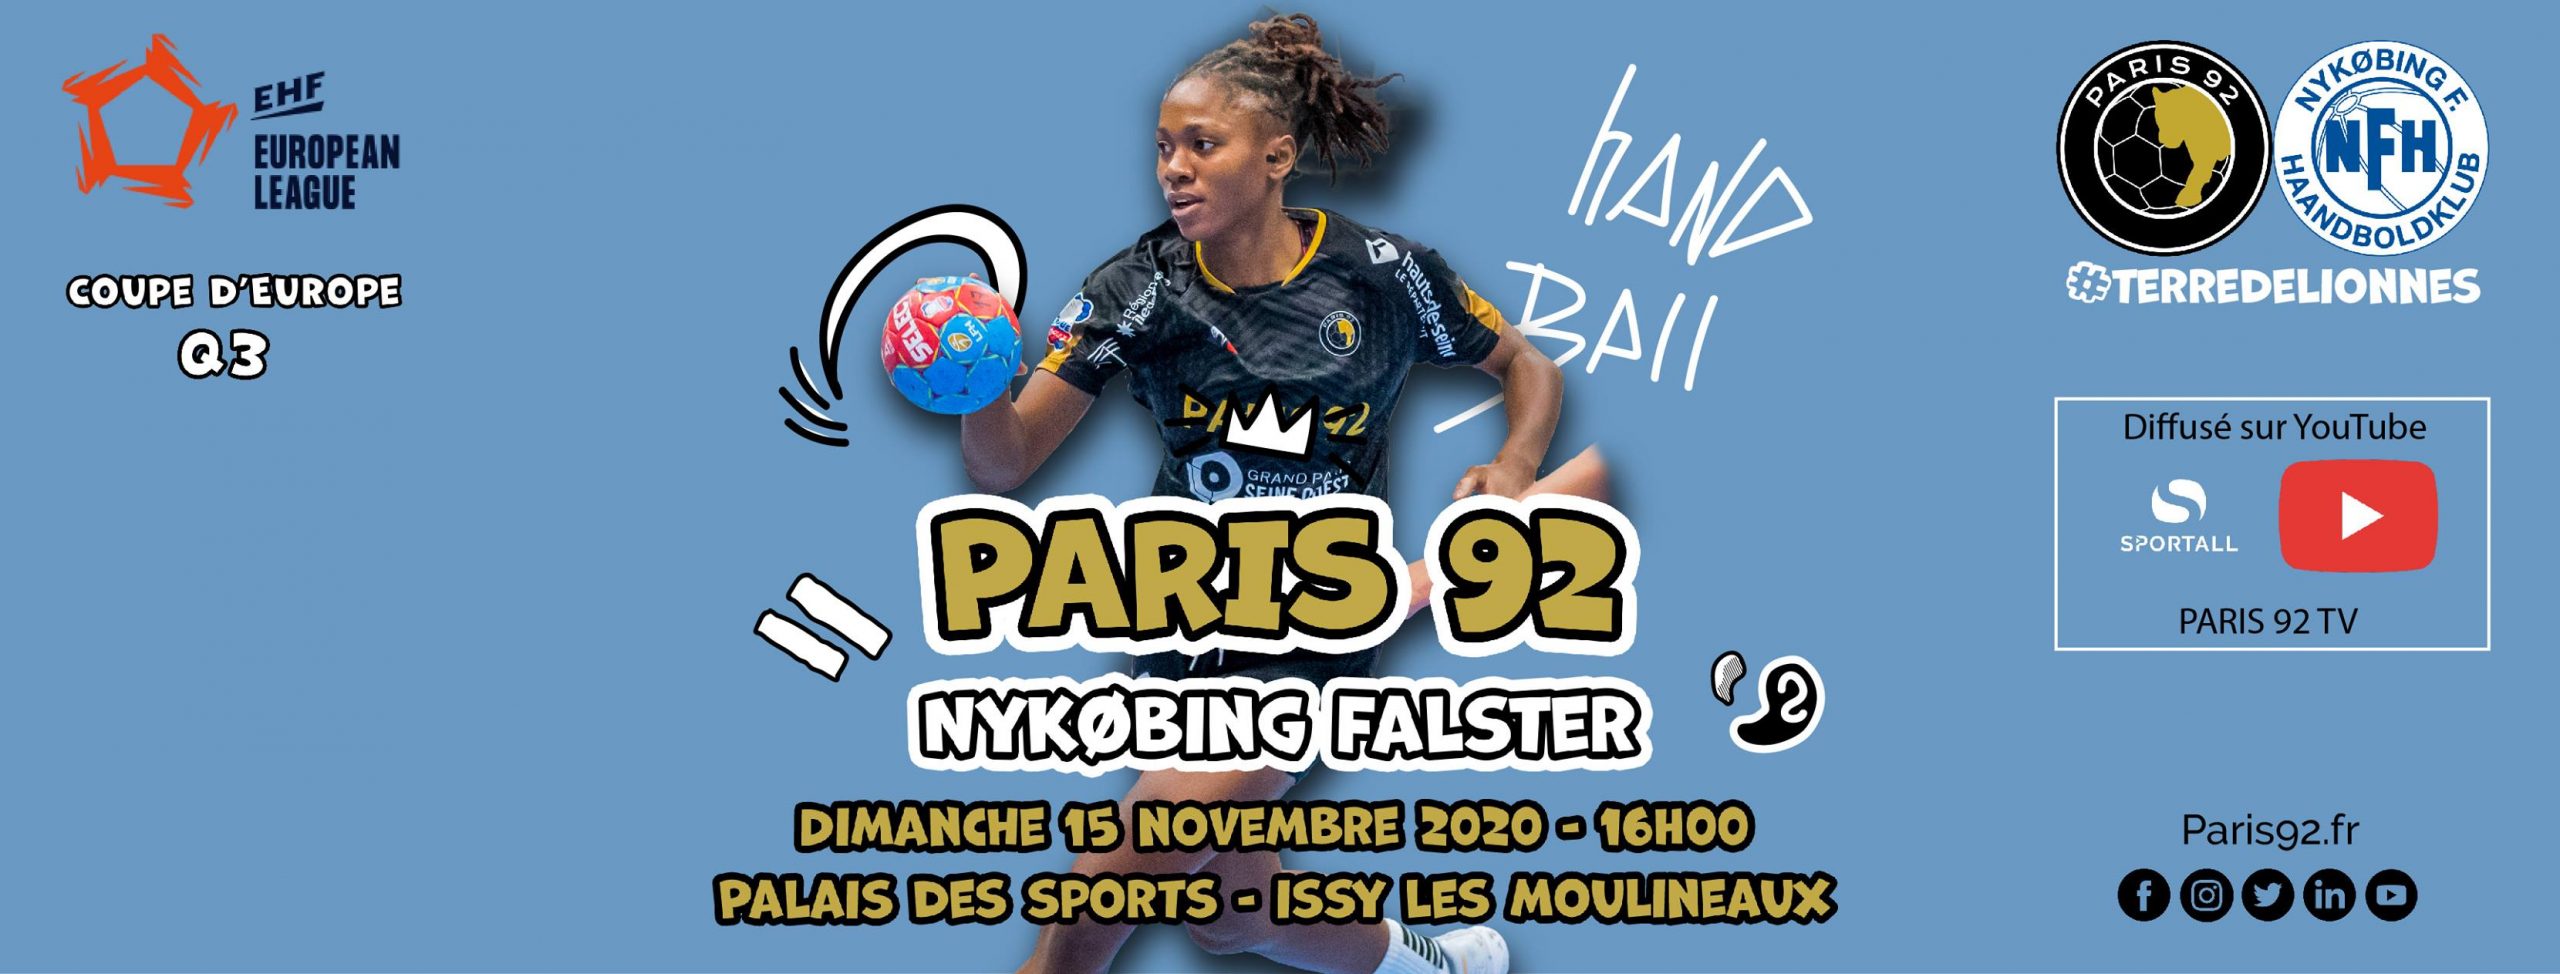 Paris 92 vs Danemark, handball féminin